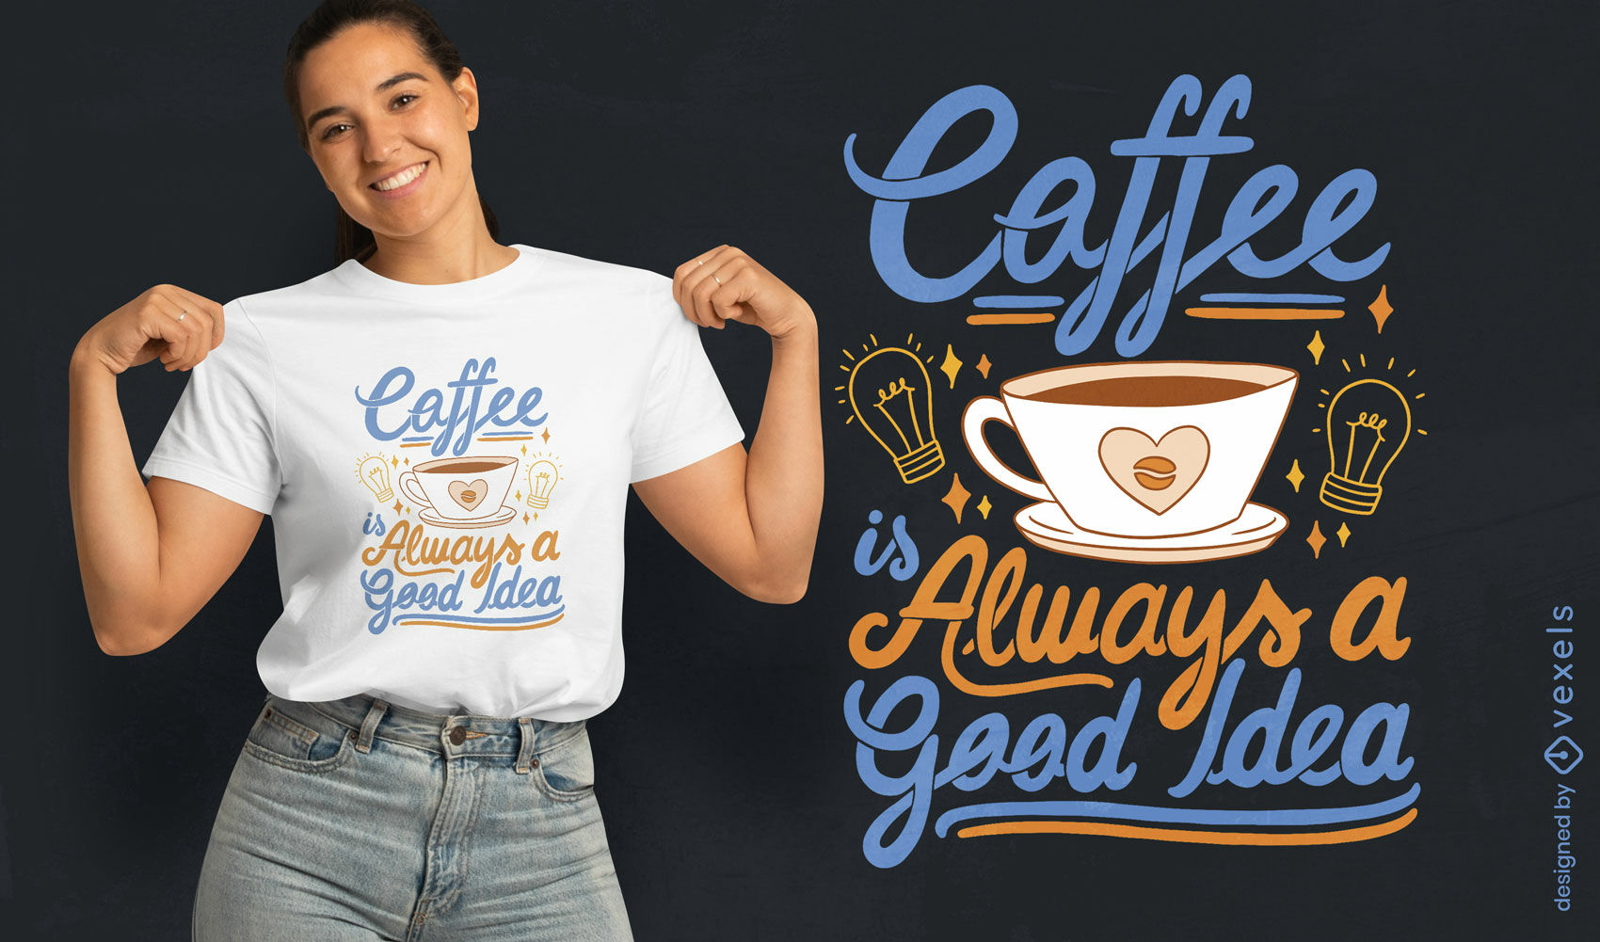 Kaffee-Enthusiasten-Zitat-T-Shirt-Design